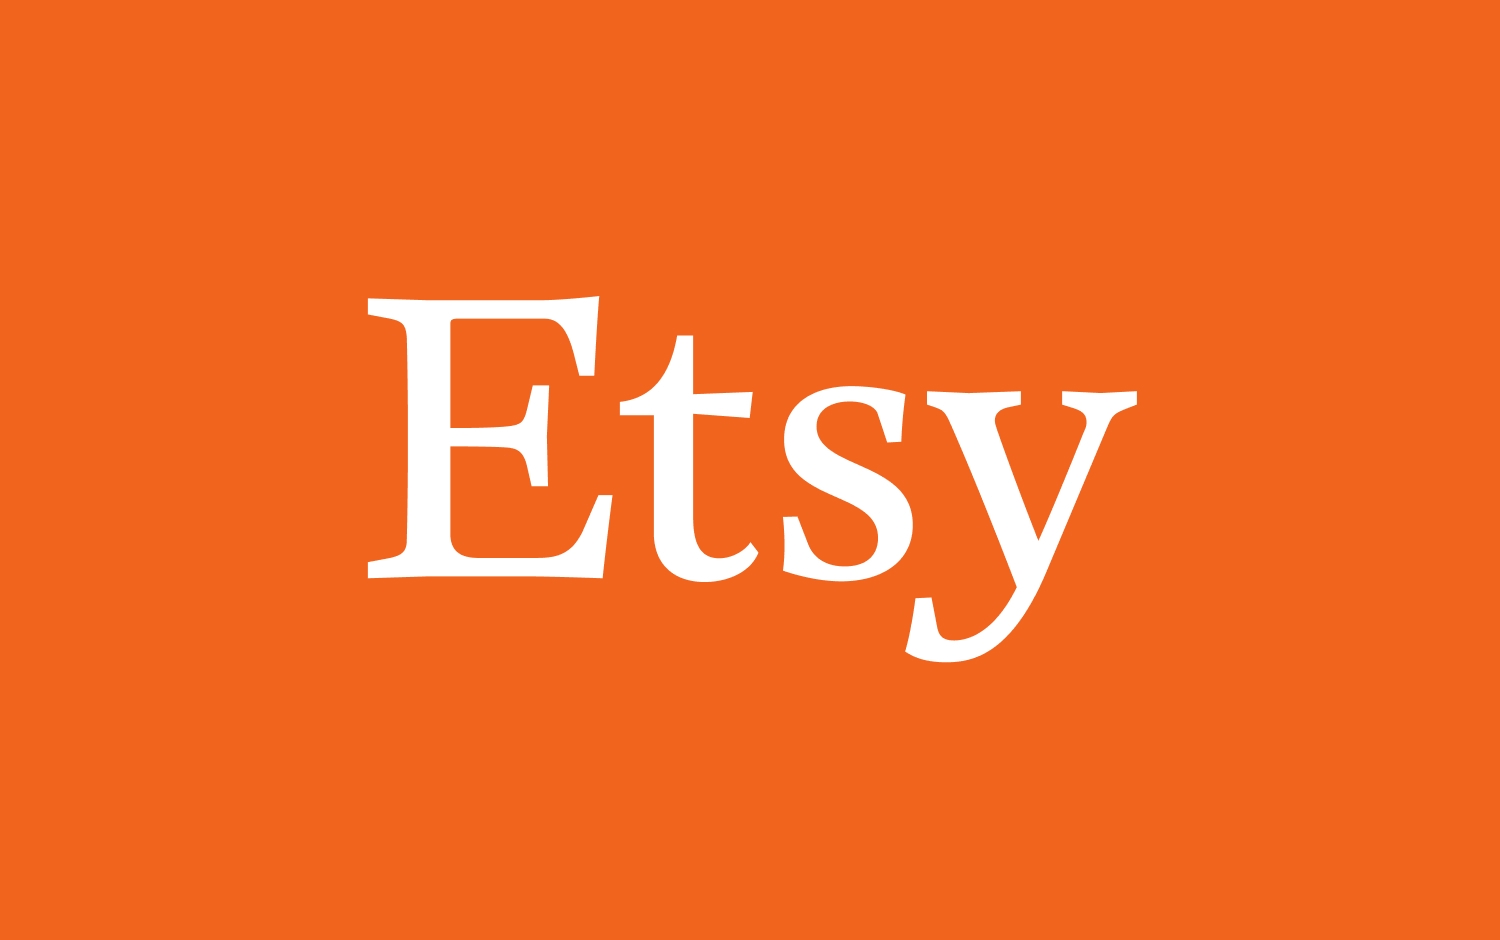 オレンジ色の背景に白いフォントの Etsy ロゴ